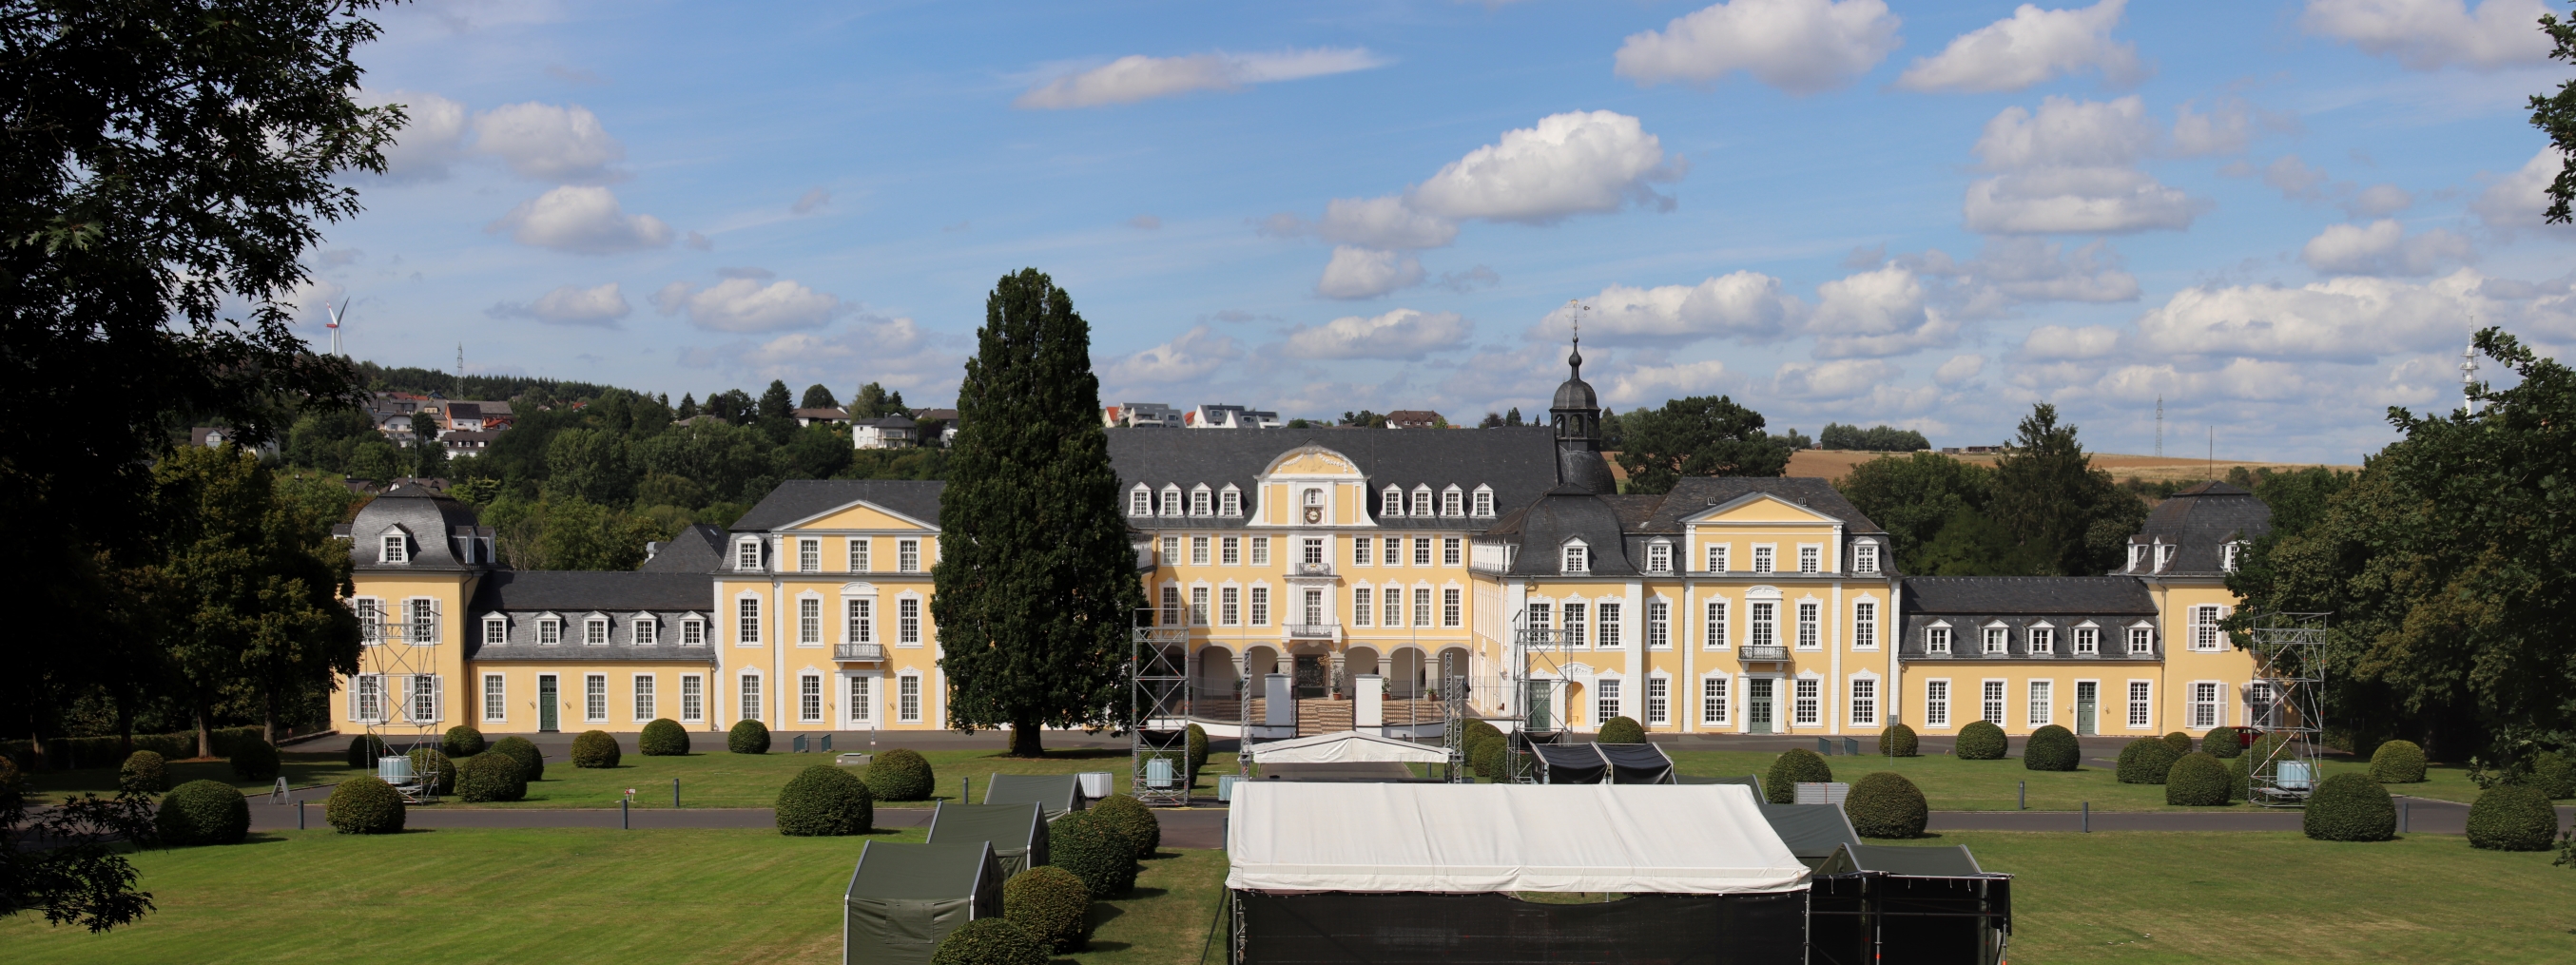 Panorama Schloss Oranienstein